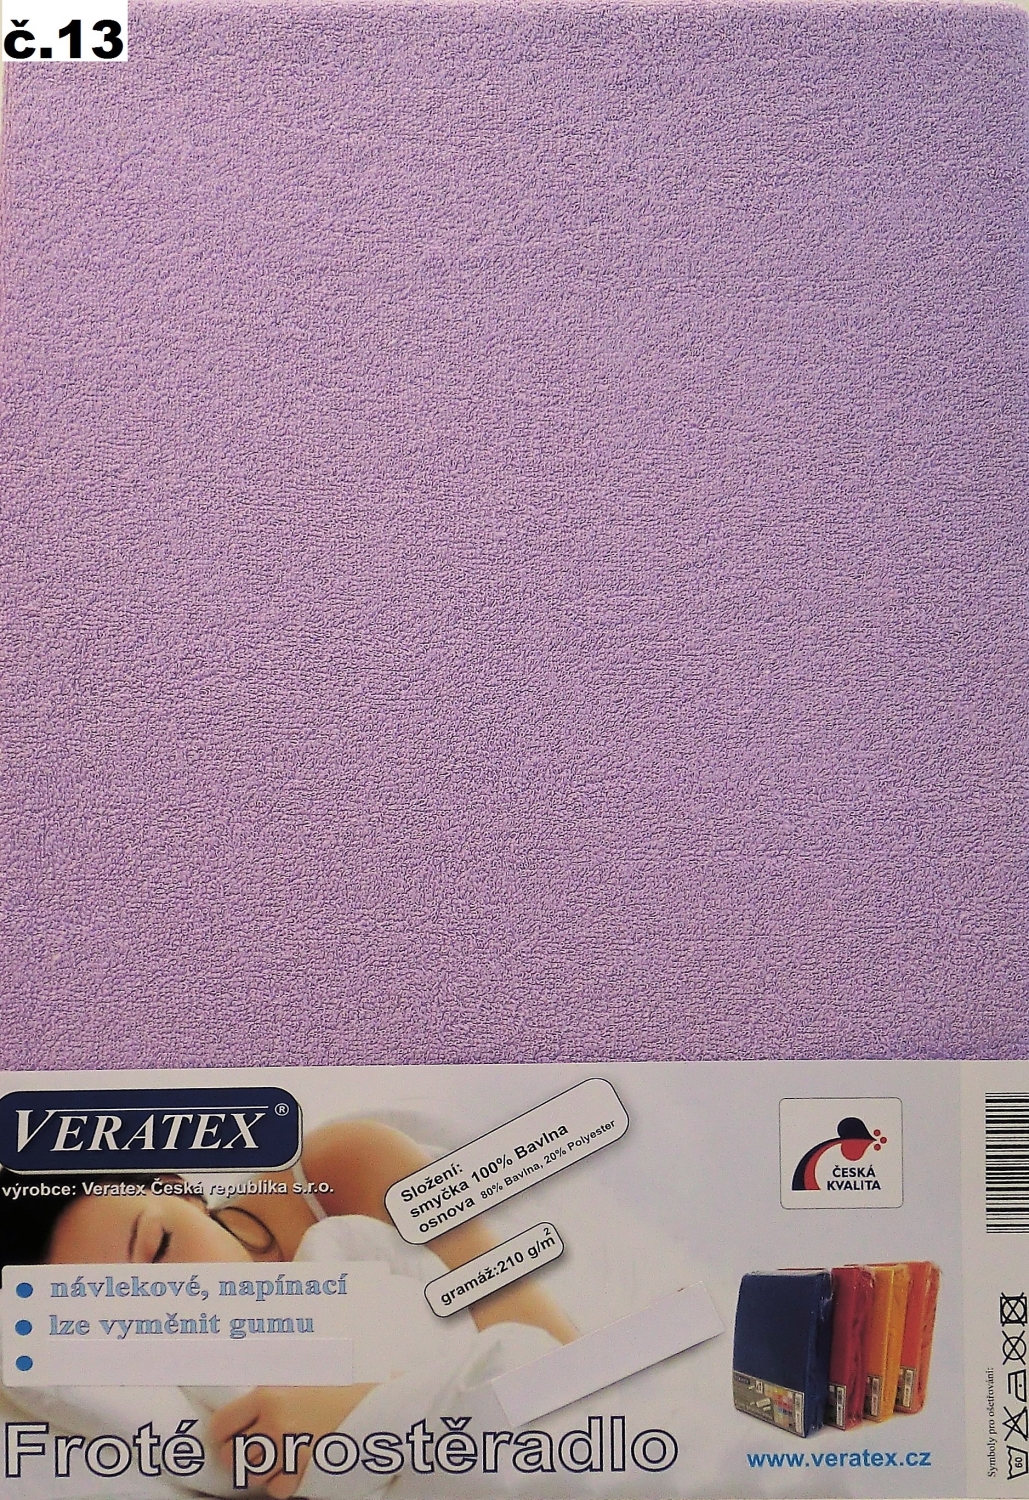 Veratex Froté prostěradlo 200 x 240 cm (č.13-fialková) 200 x 240 cm